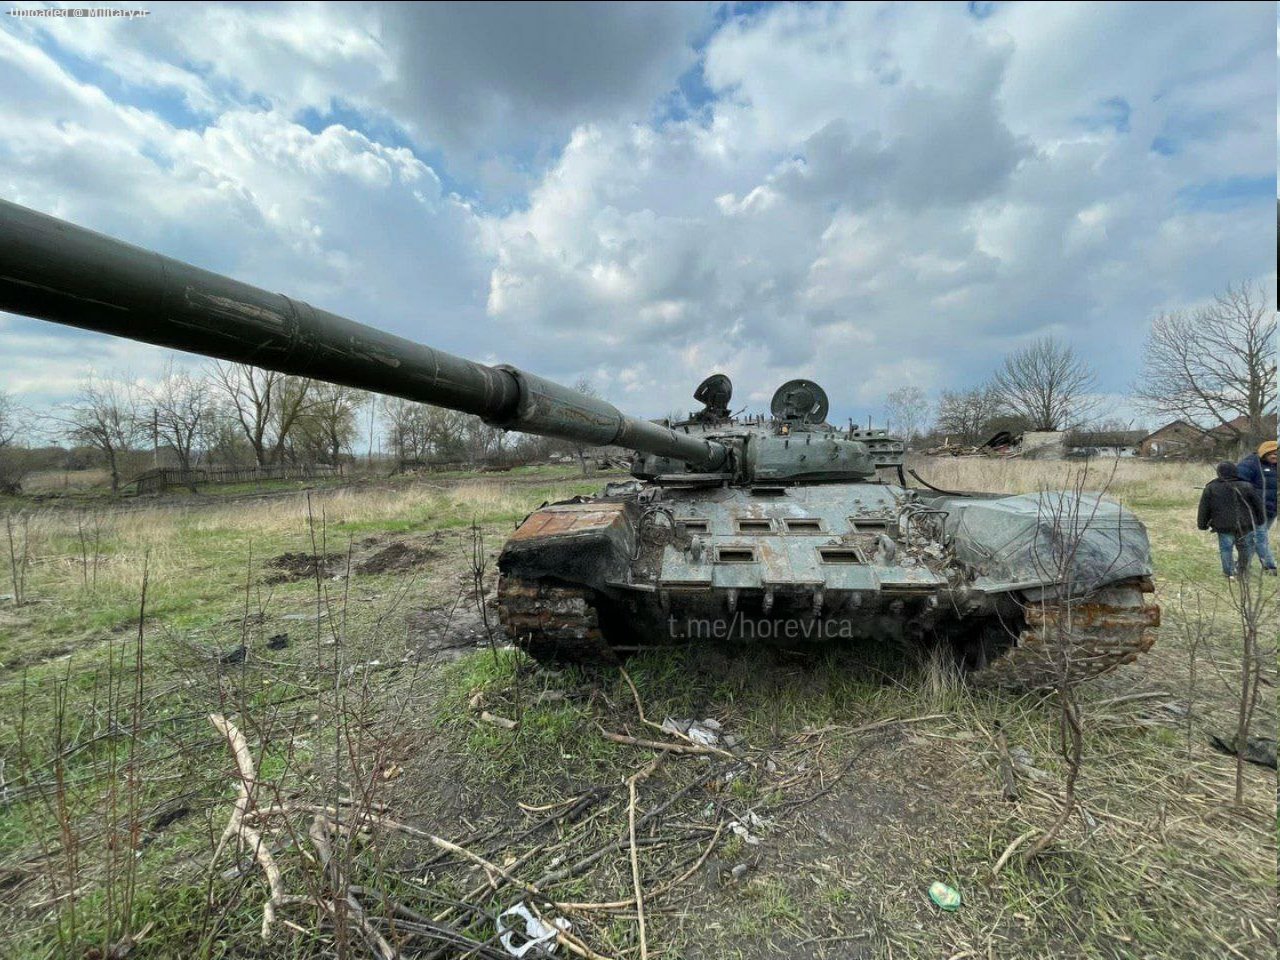 A_T-72B_Obr__1989_tank_of_the_Russian_Ar